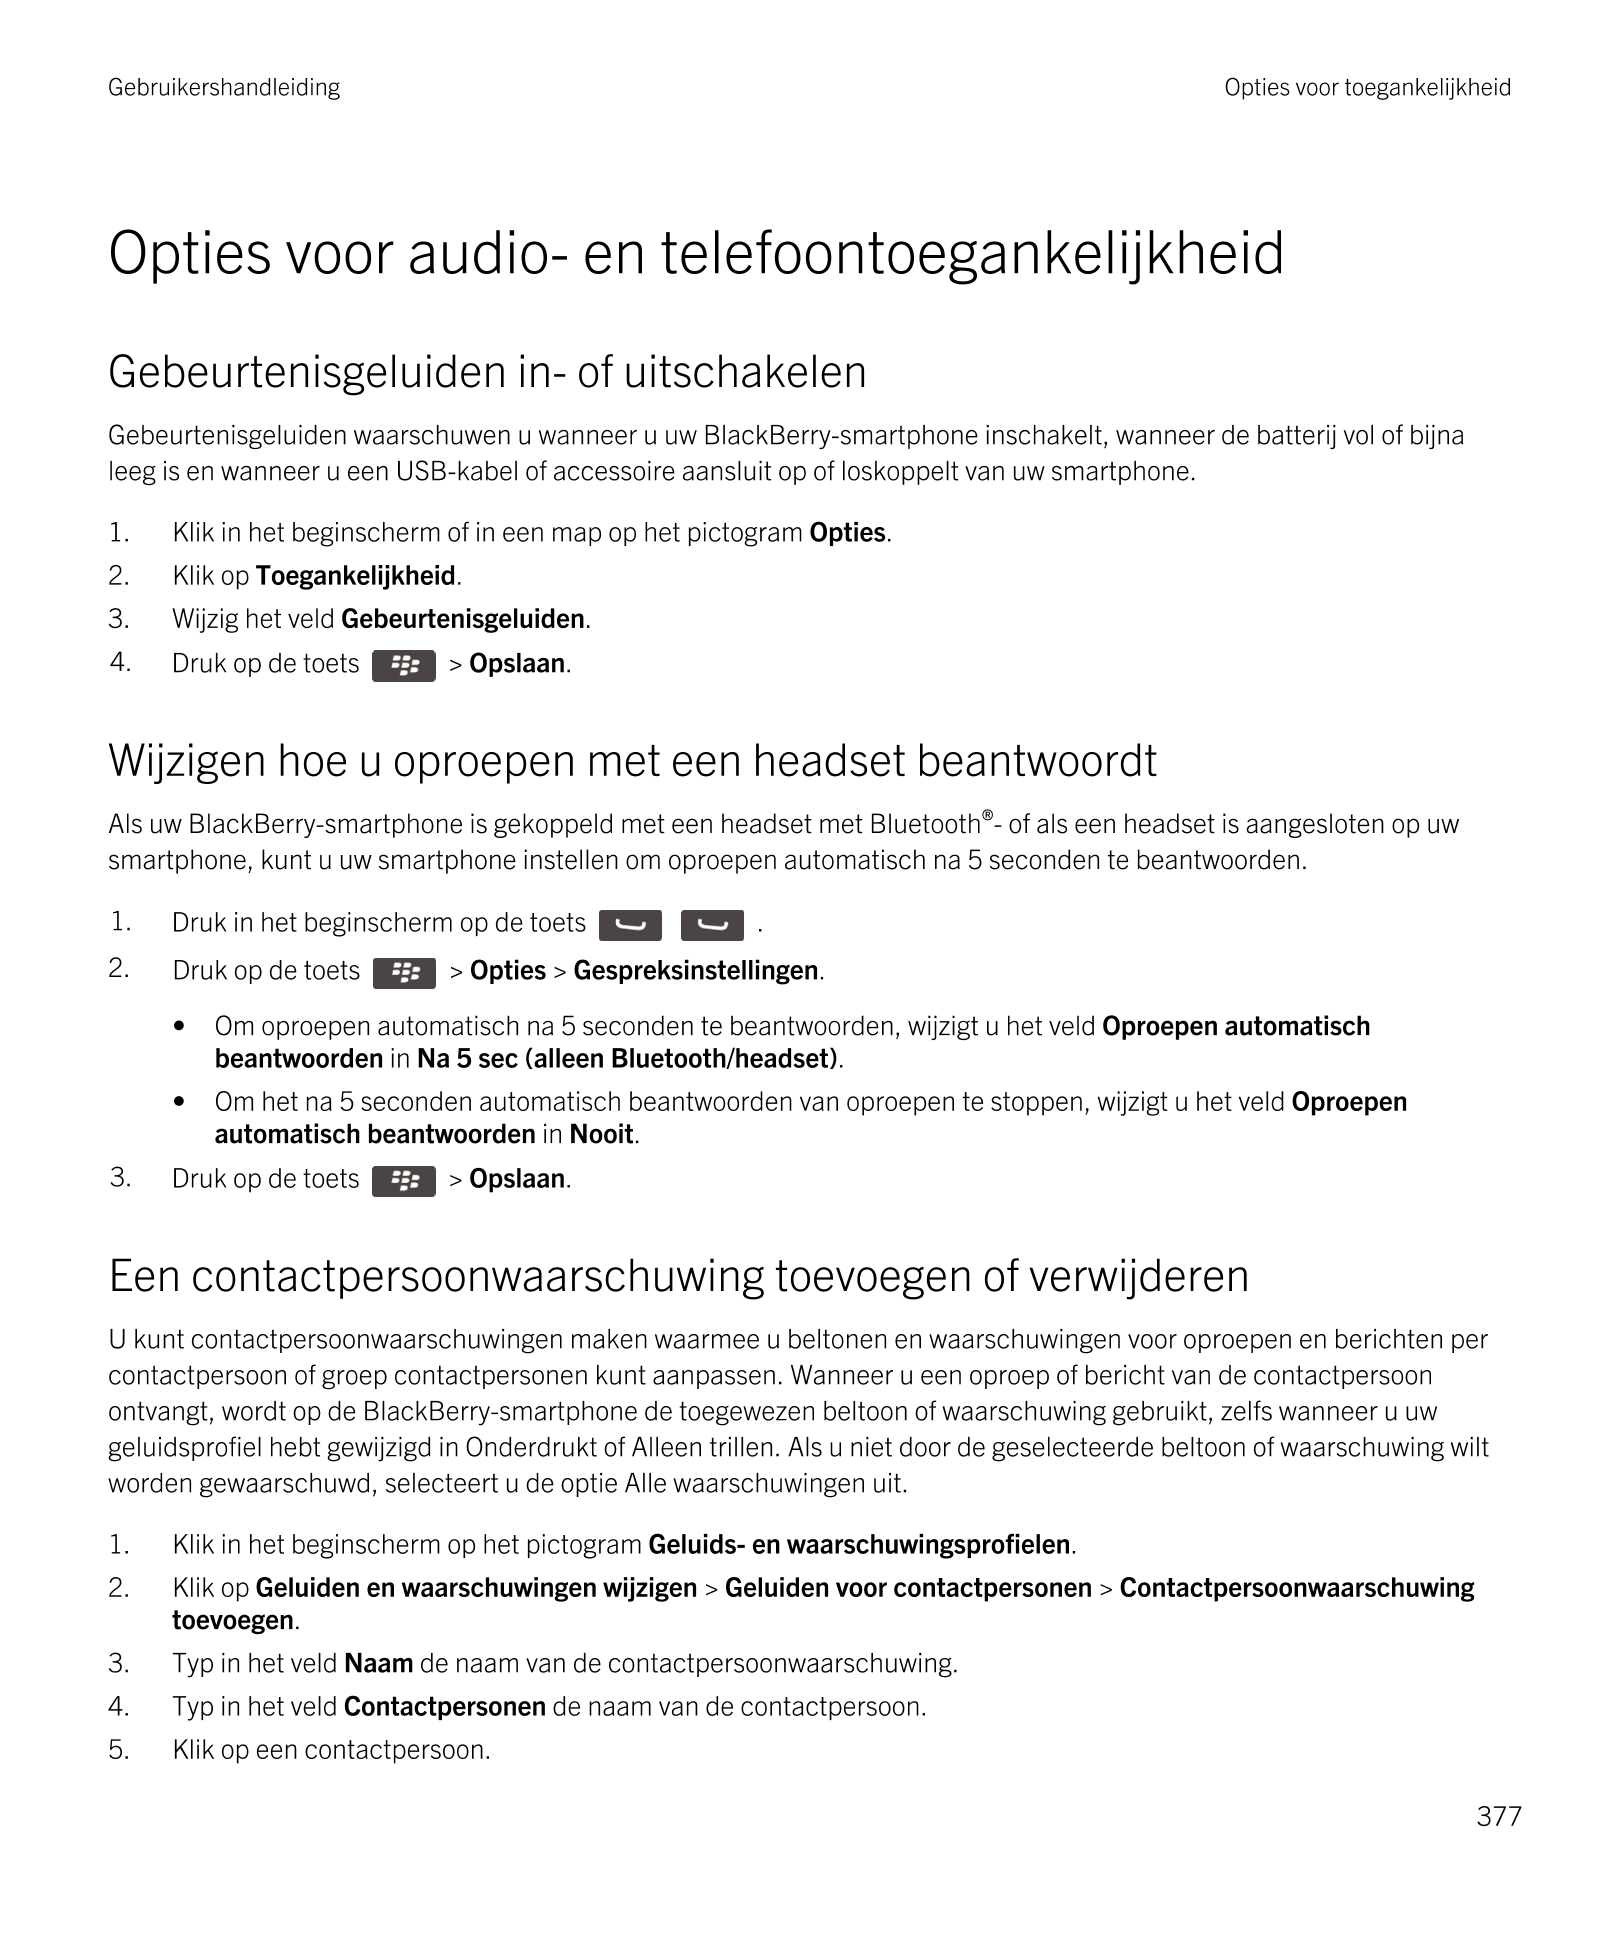 Gebruikershandleiding Opties voor toegankelijkheid
Opties voor audio- en telefoontoegankelijkheid
Gebeurtenisgeluiden in- of uit